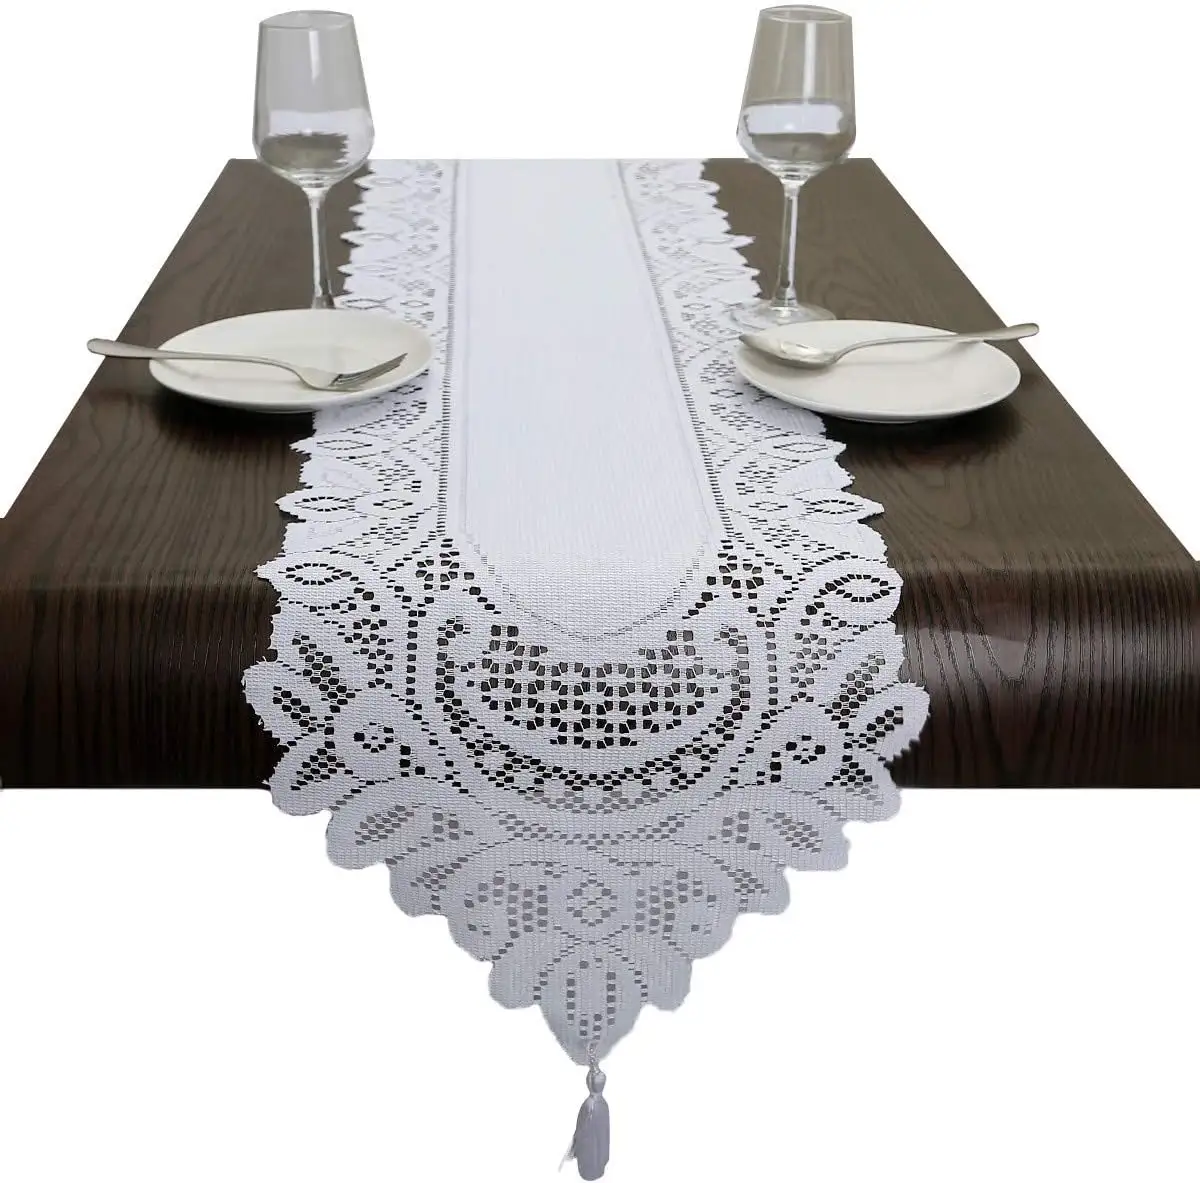 Camino de mesa de encaje Jacquard blanco bordado Floral encaje cómoda bufanda hogar cocina al aire libre boda fiesta superposición Decoración